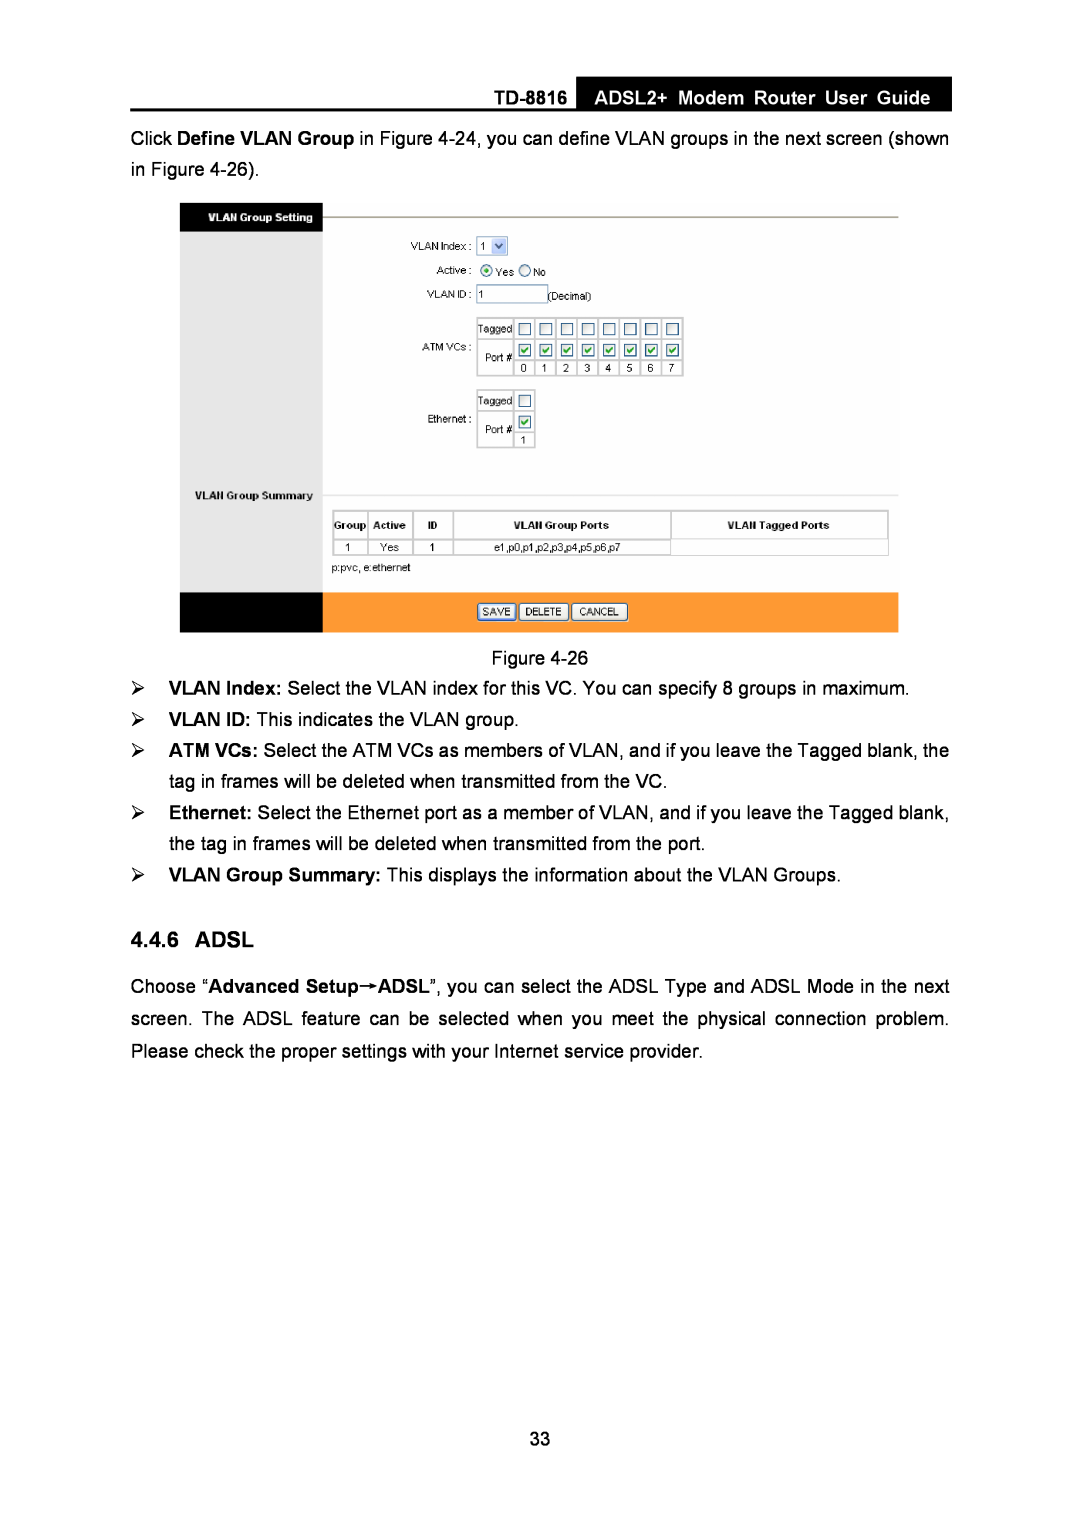 TP-Link TD-8816 manual Adsl, ADSL2+ Modem Router User Guide 